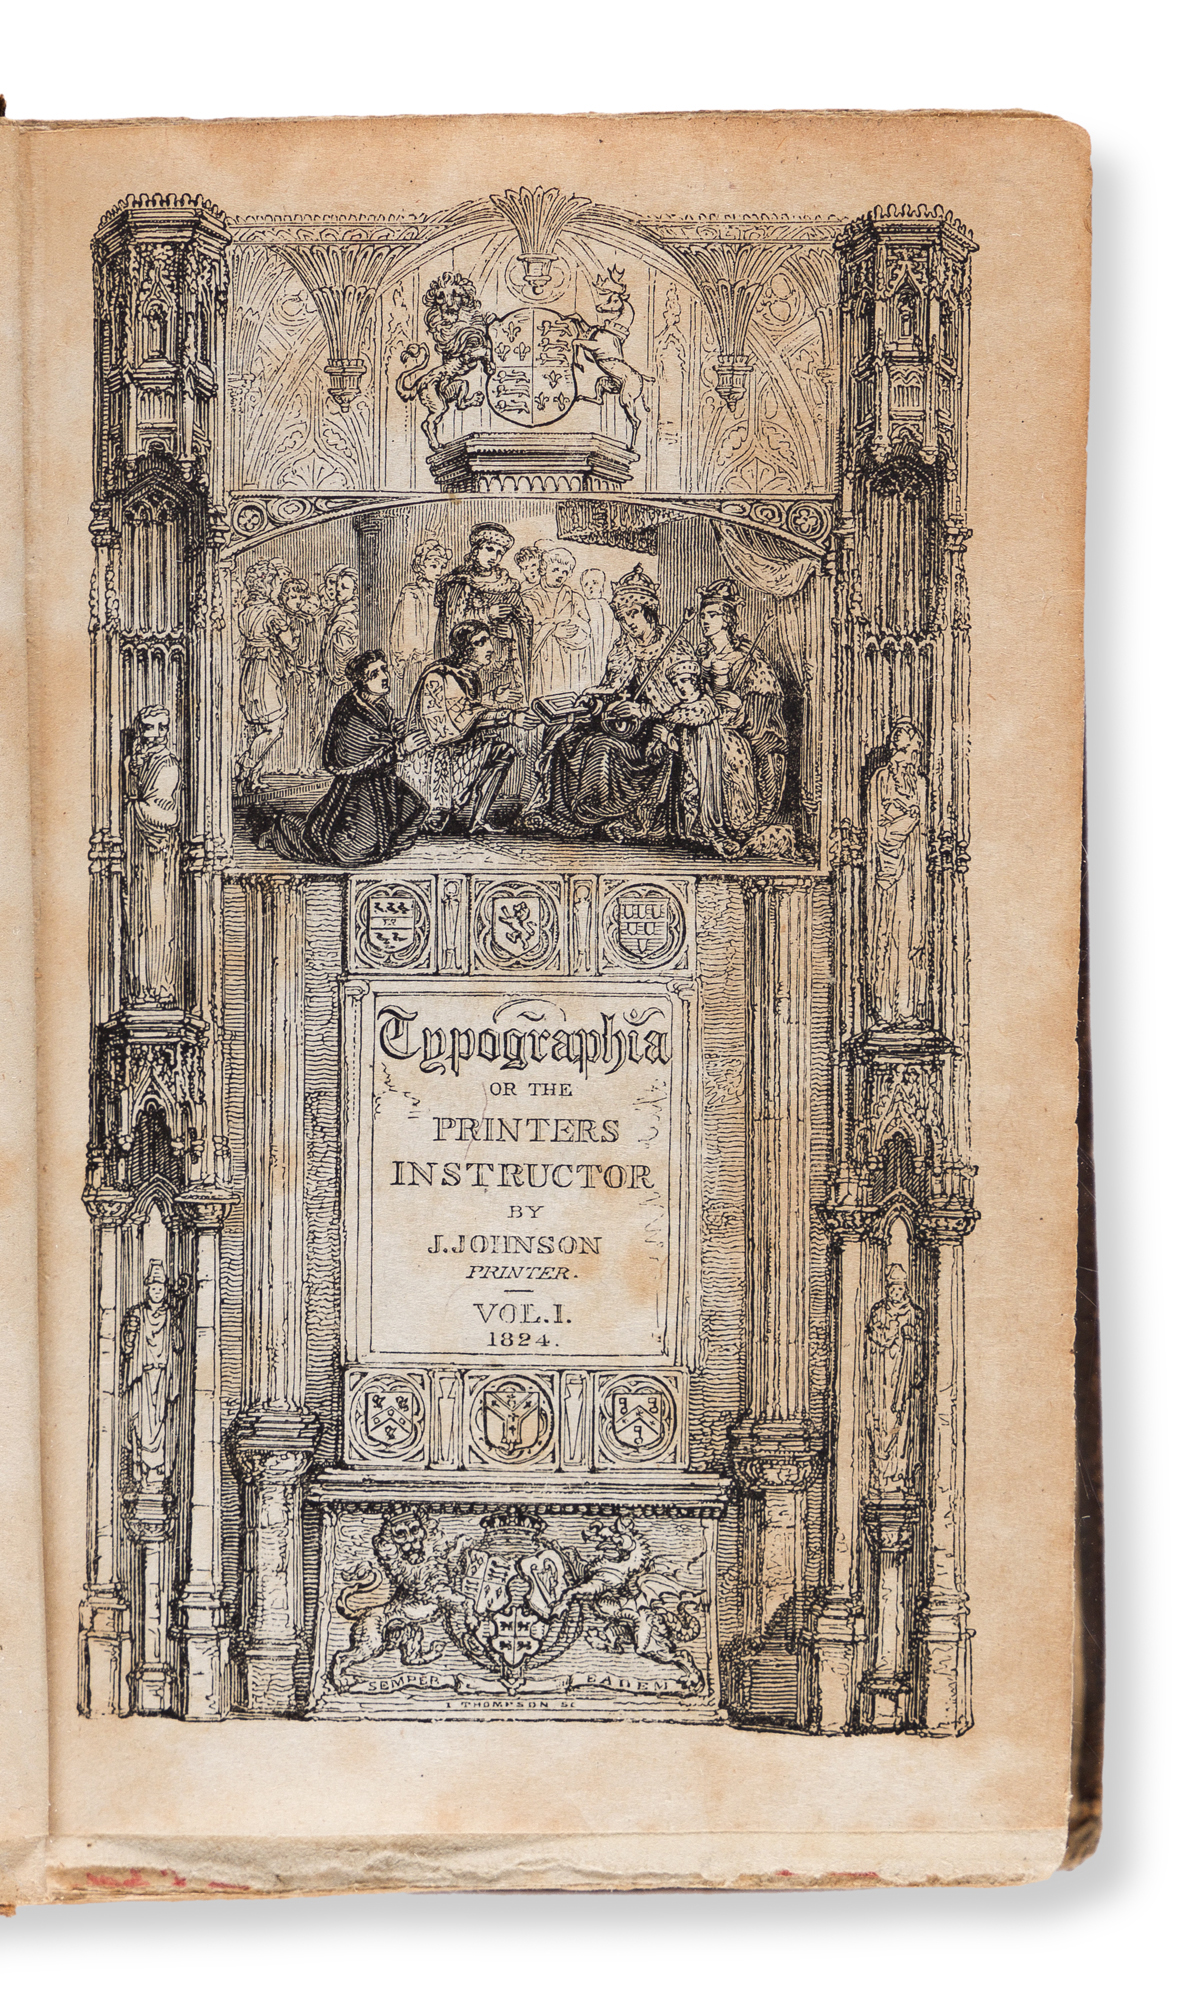 JOHNSON, JOHN. Typographia, or the Printers’ Instructor… London: Longman, Hurst, Rees, etc., 1824.